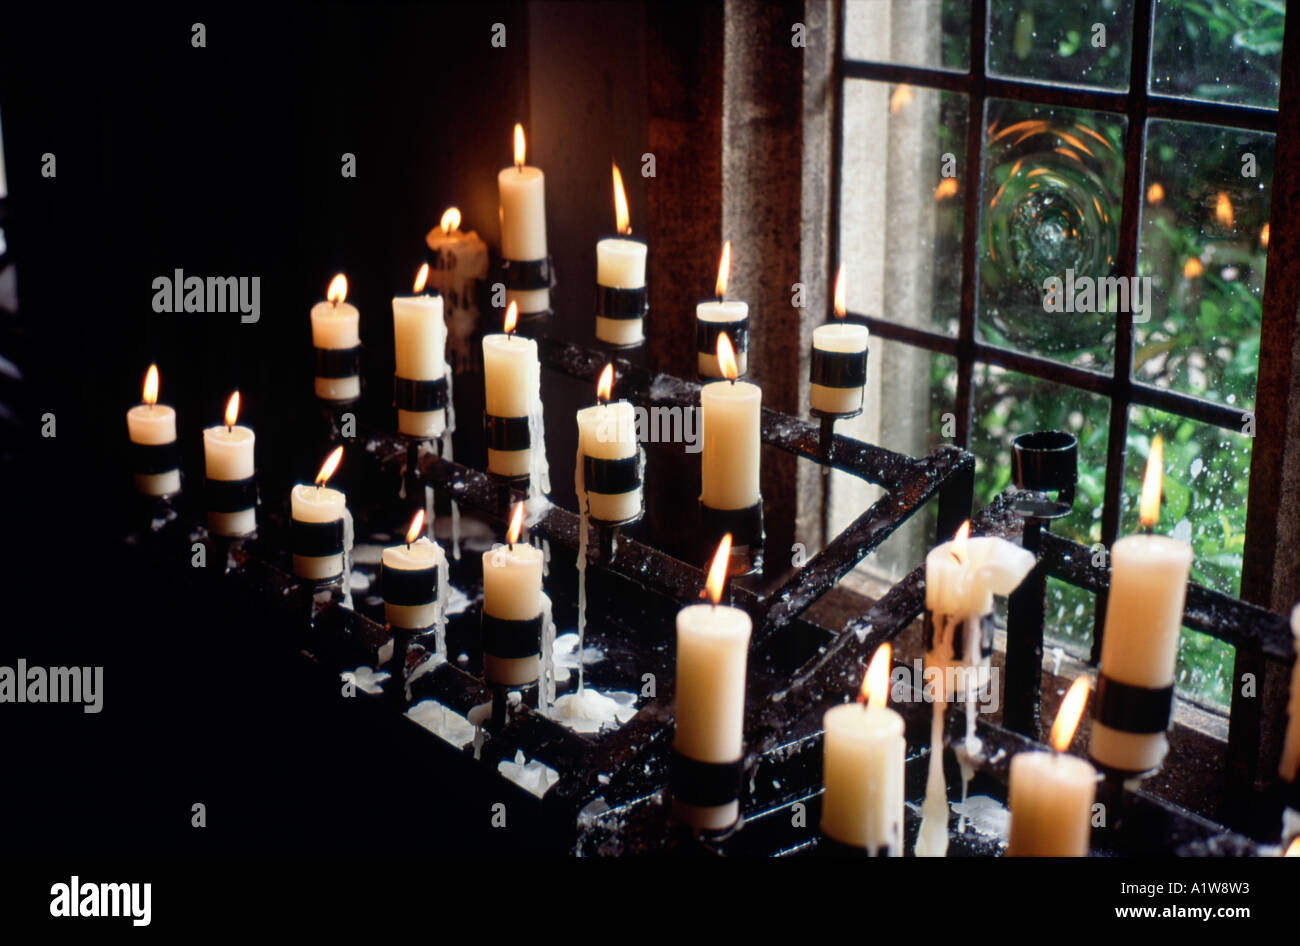 Votive-Kerzen an den Heiligen Geist Kapelle Walsingham Norfolk England  Englisch Großbritannien britische Vereinigtes Königreich Großbritannien  Europa Eu Europäische Stockfotografie - Alamy